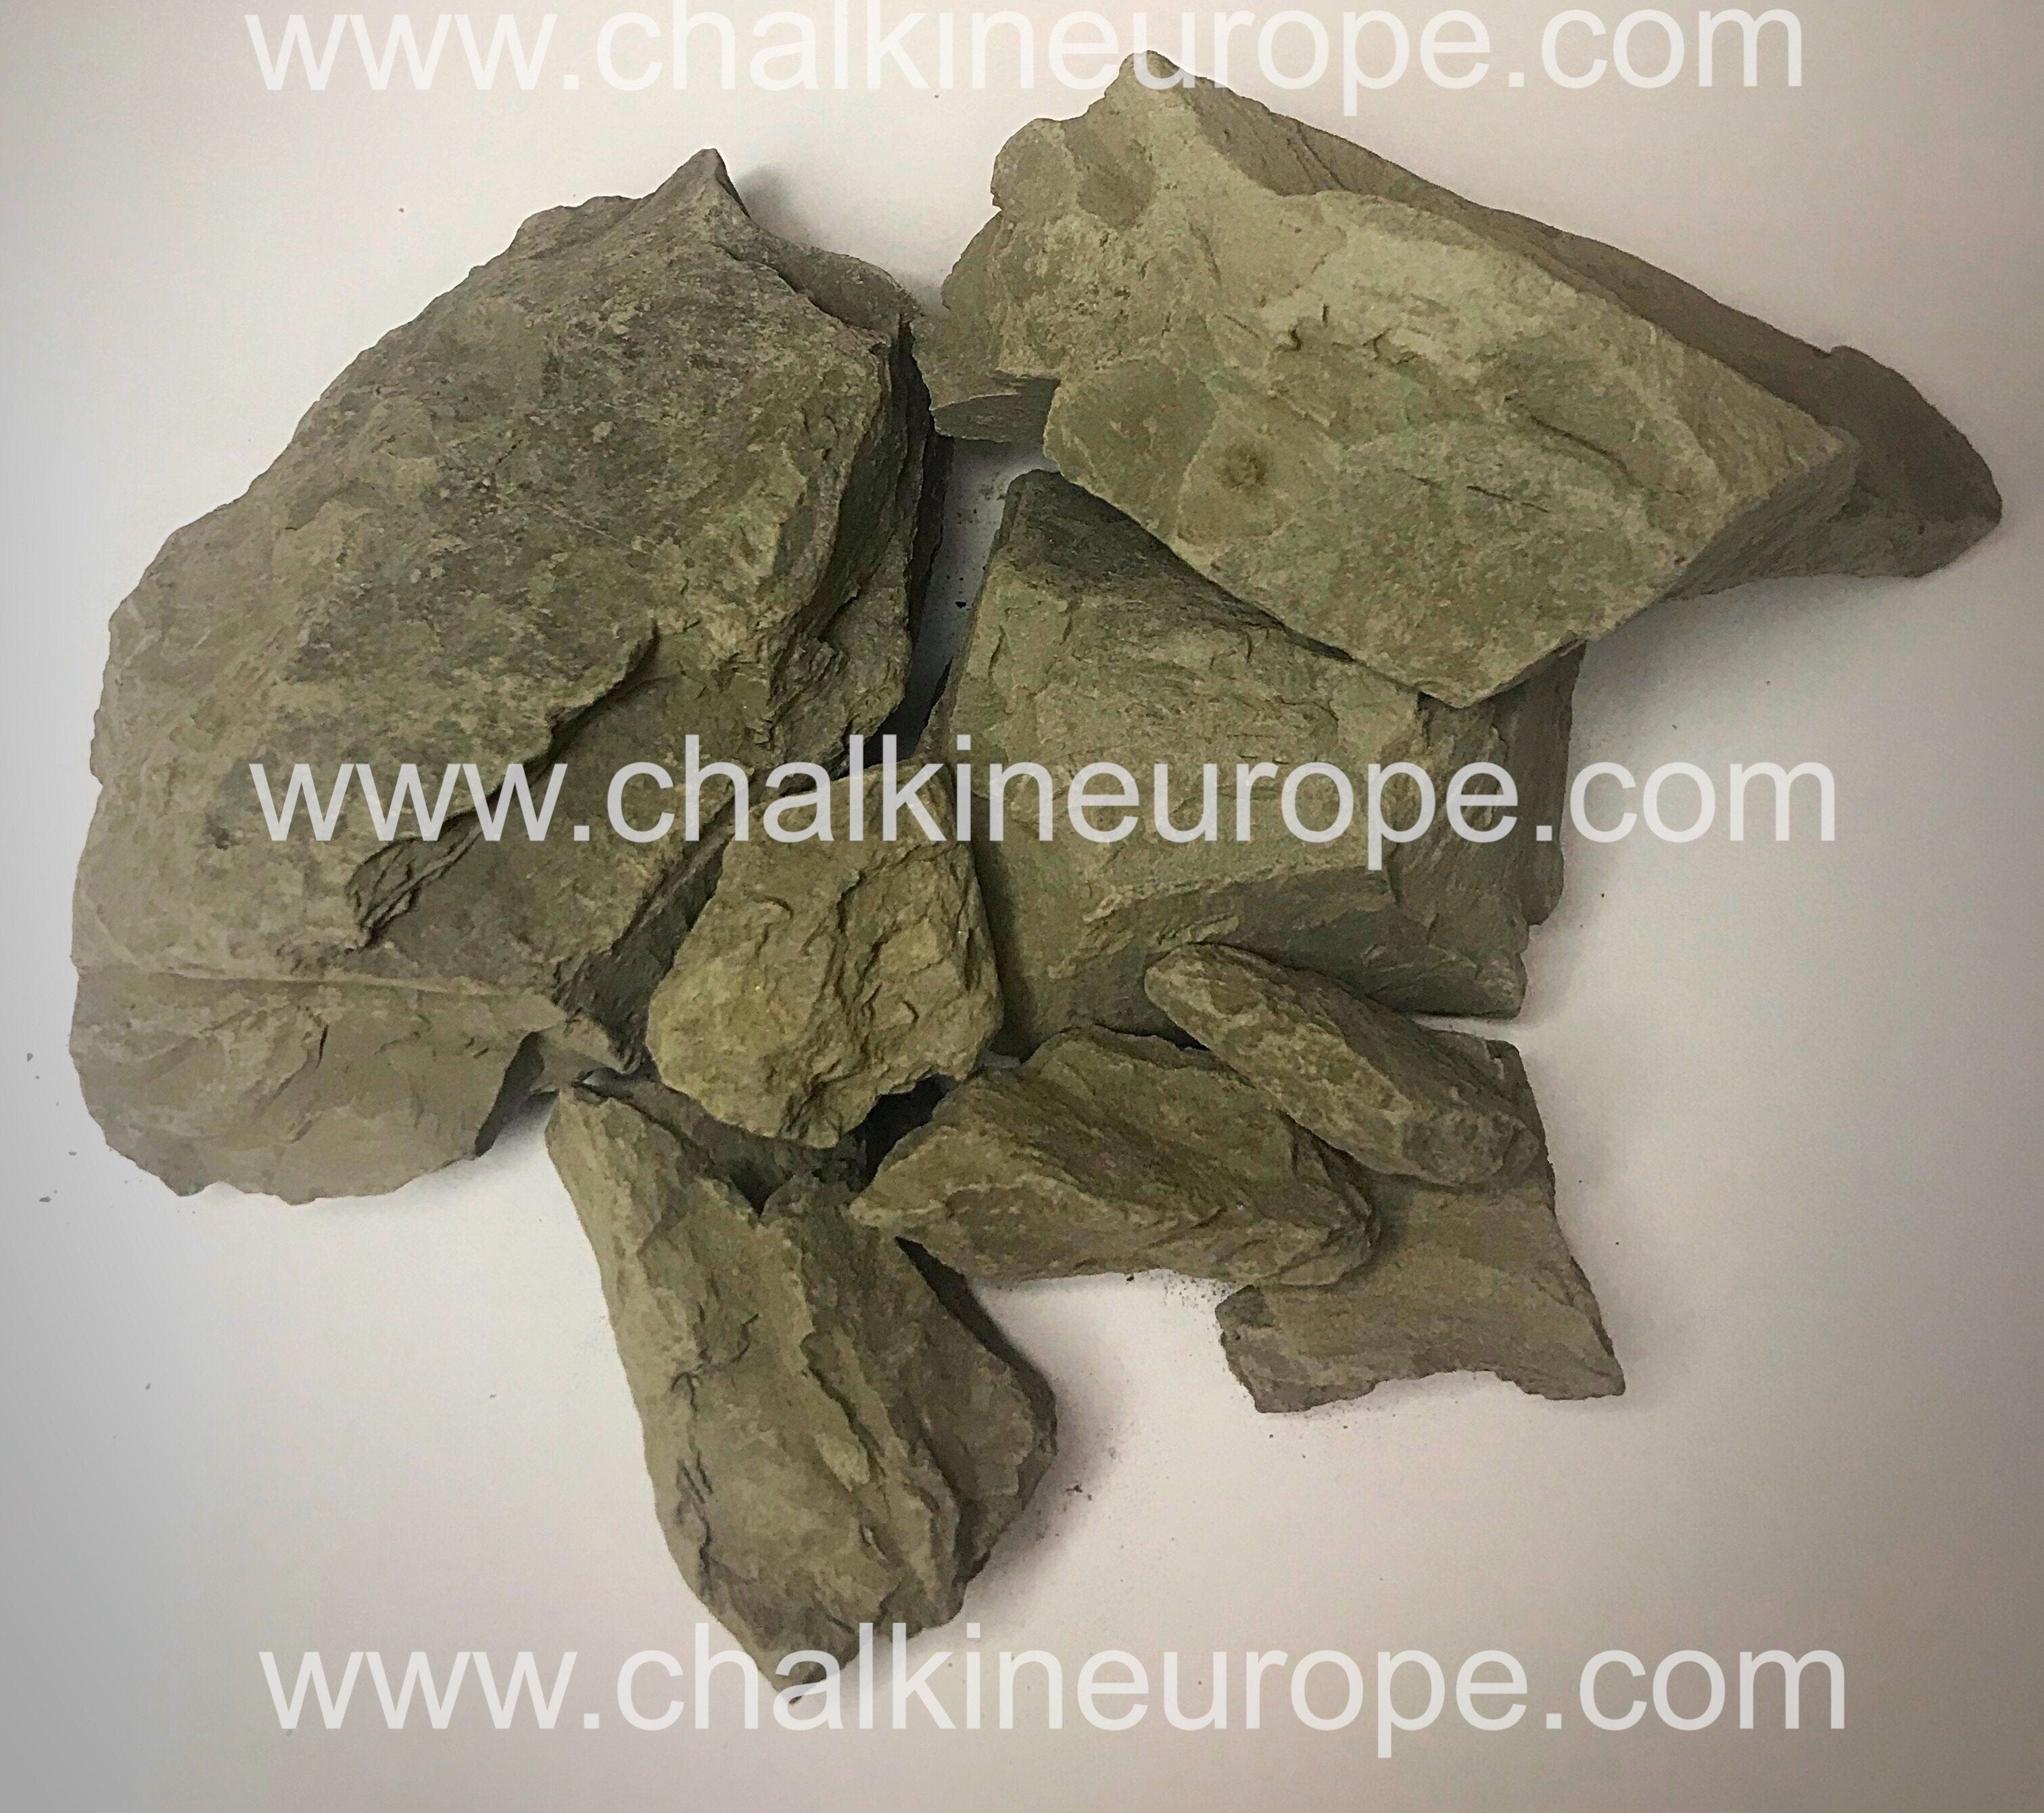 الطين الأسود - Chalkineurope